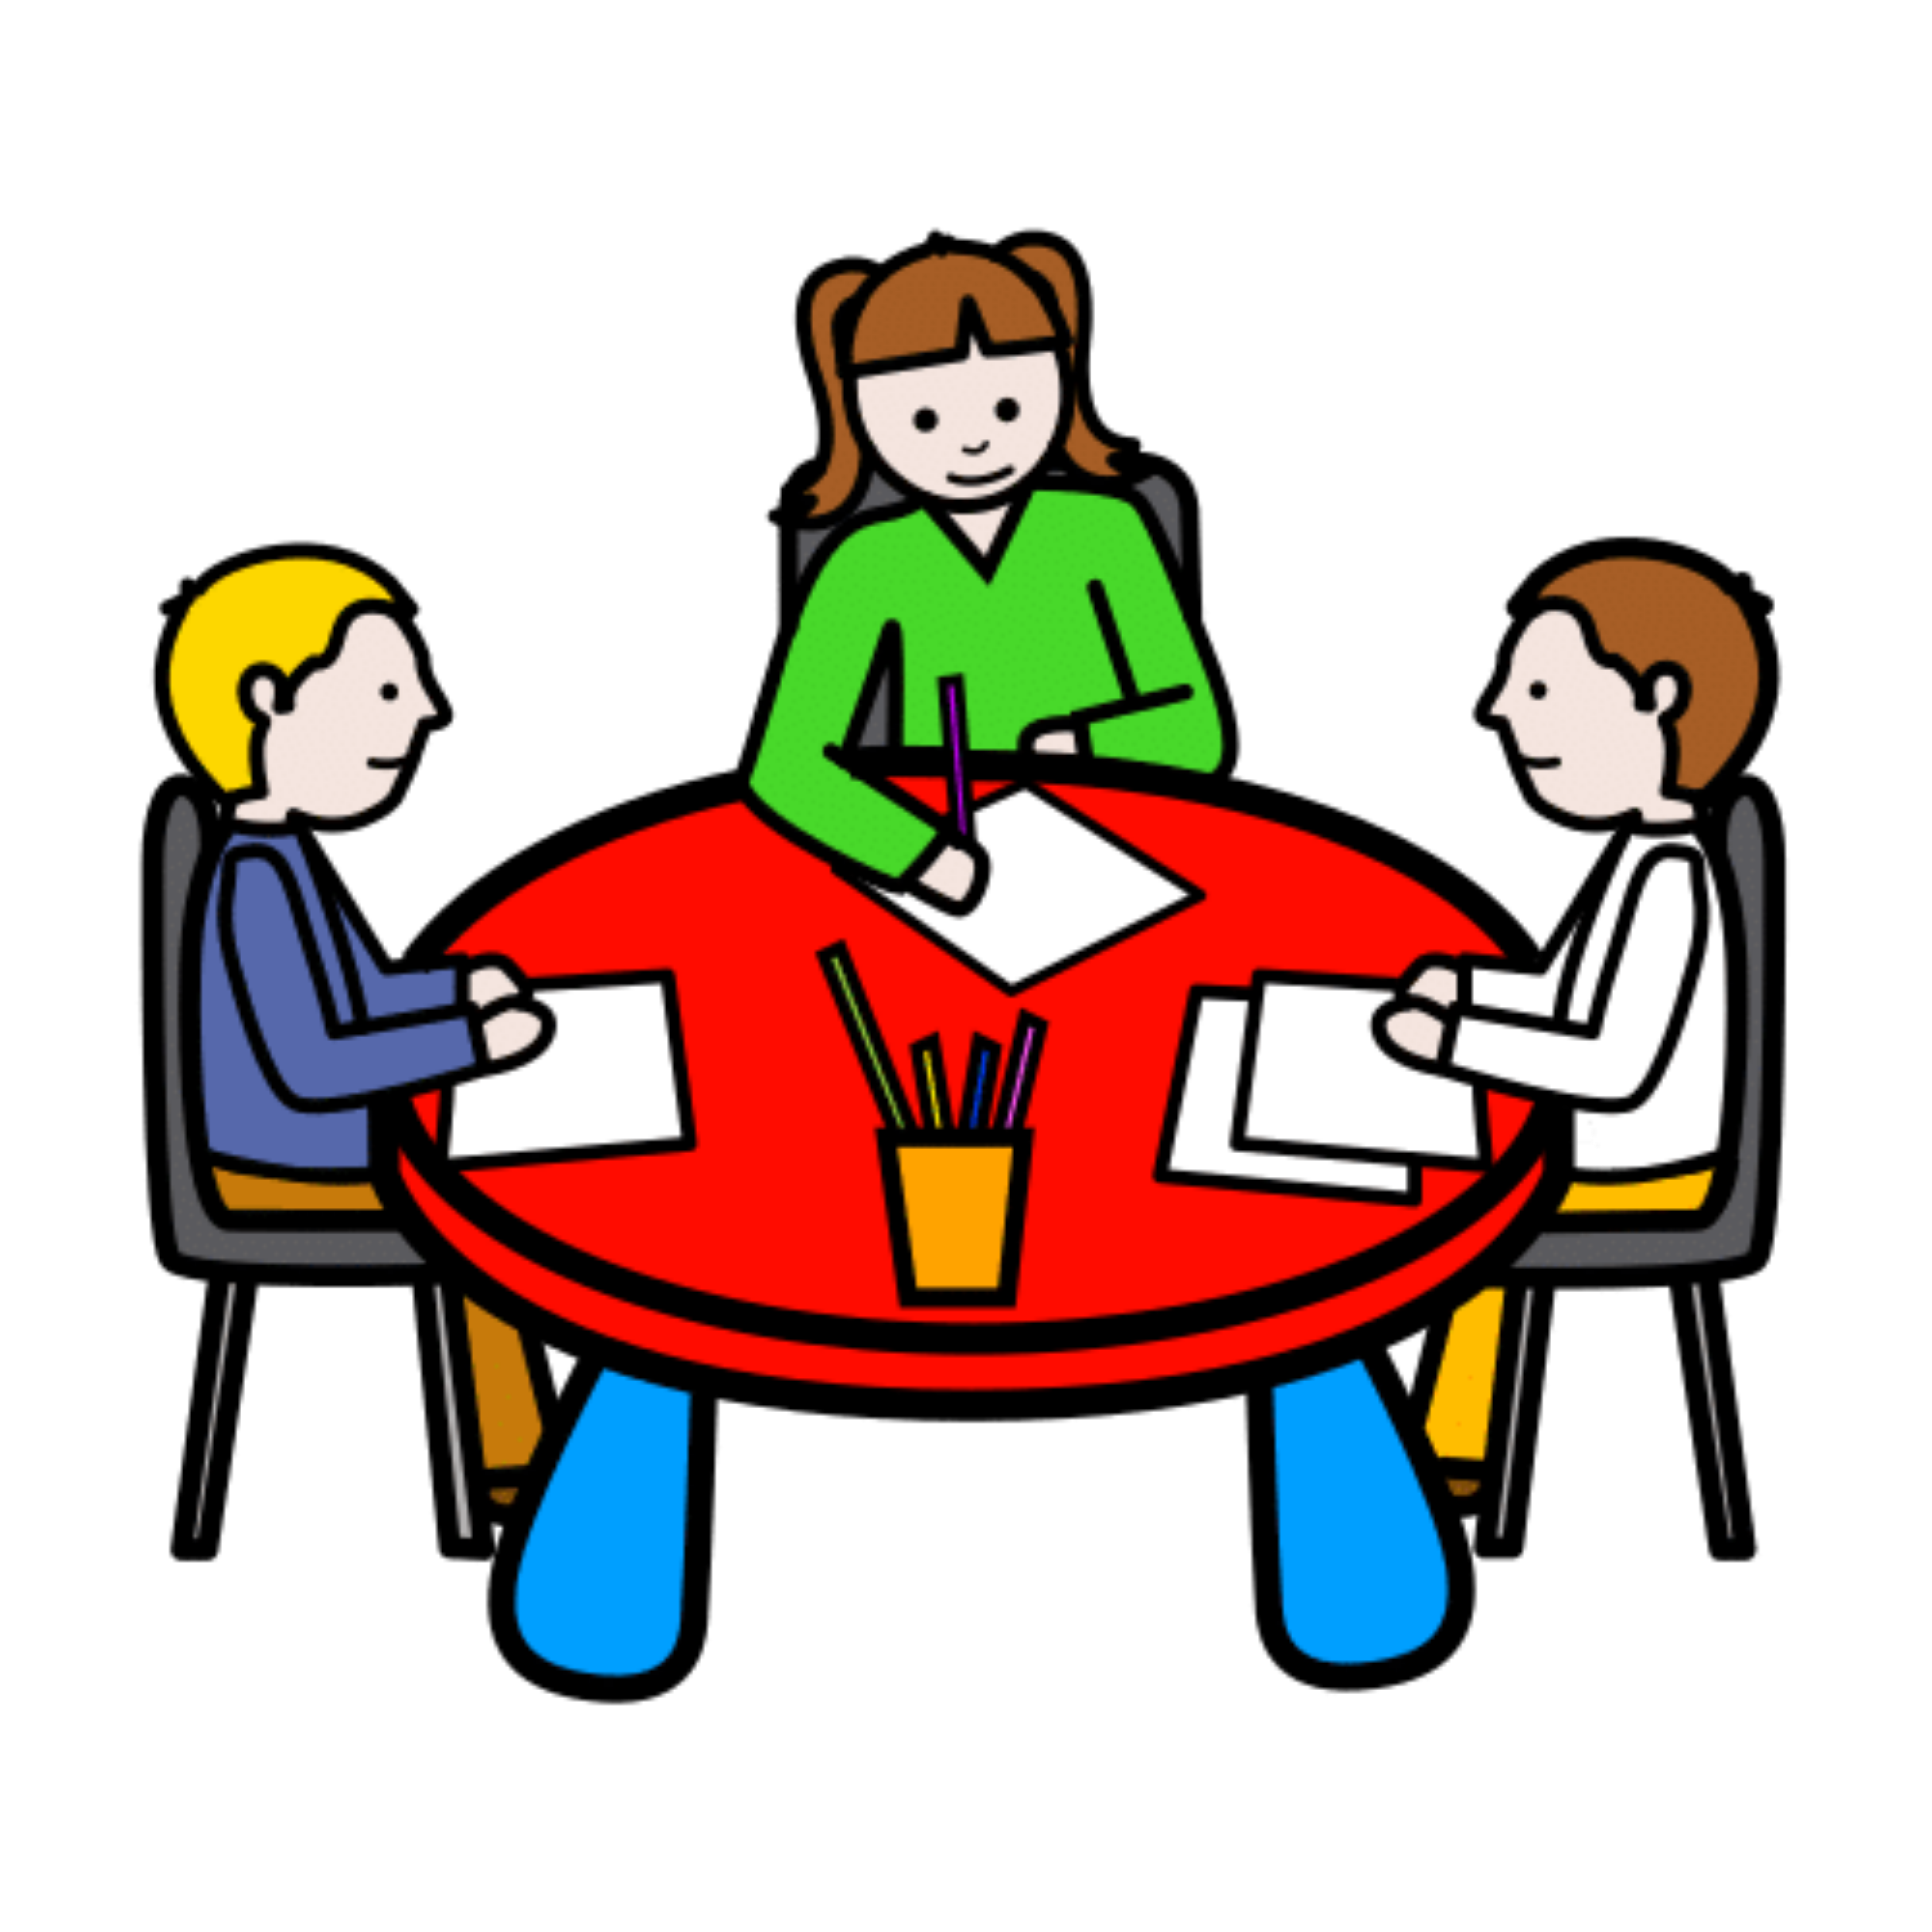 La imagen muestra a tres personas trabajando, sentadas alrededor de una mesa